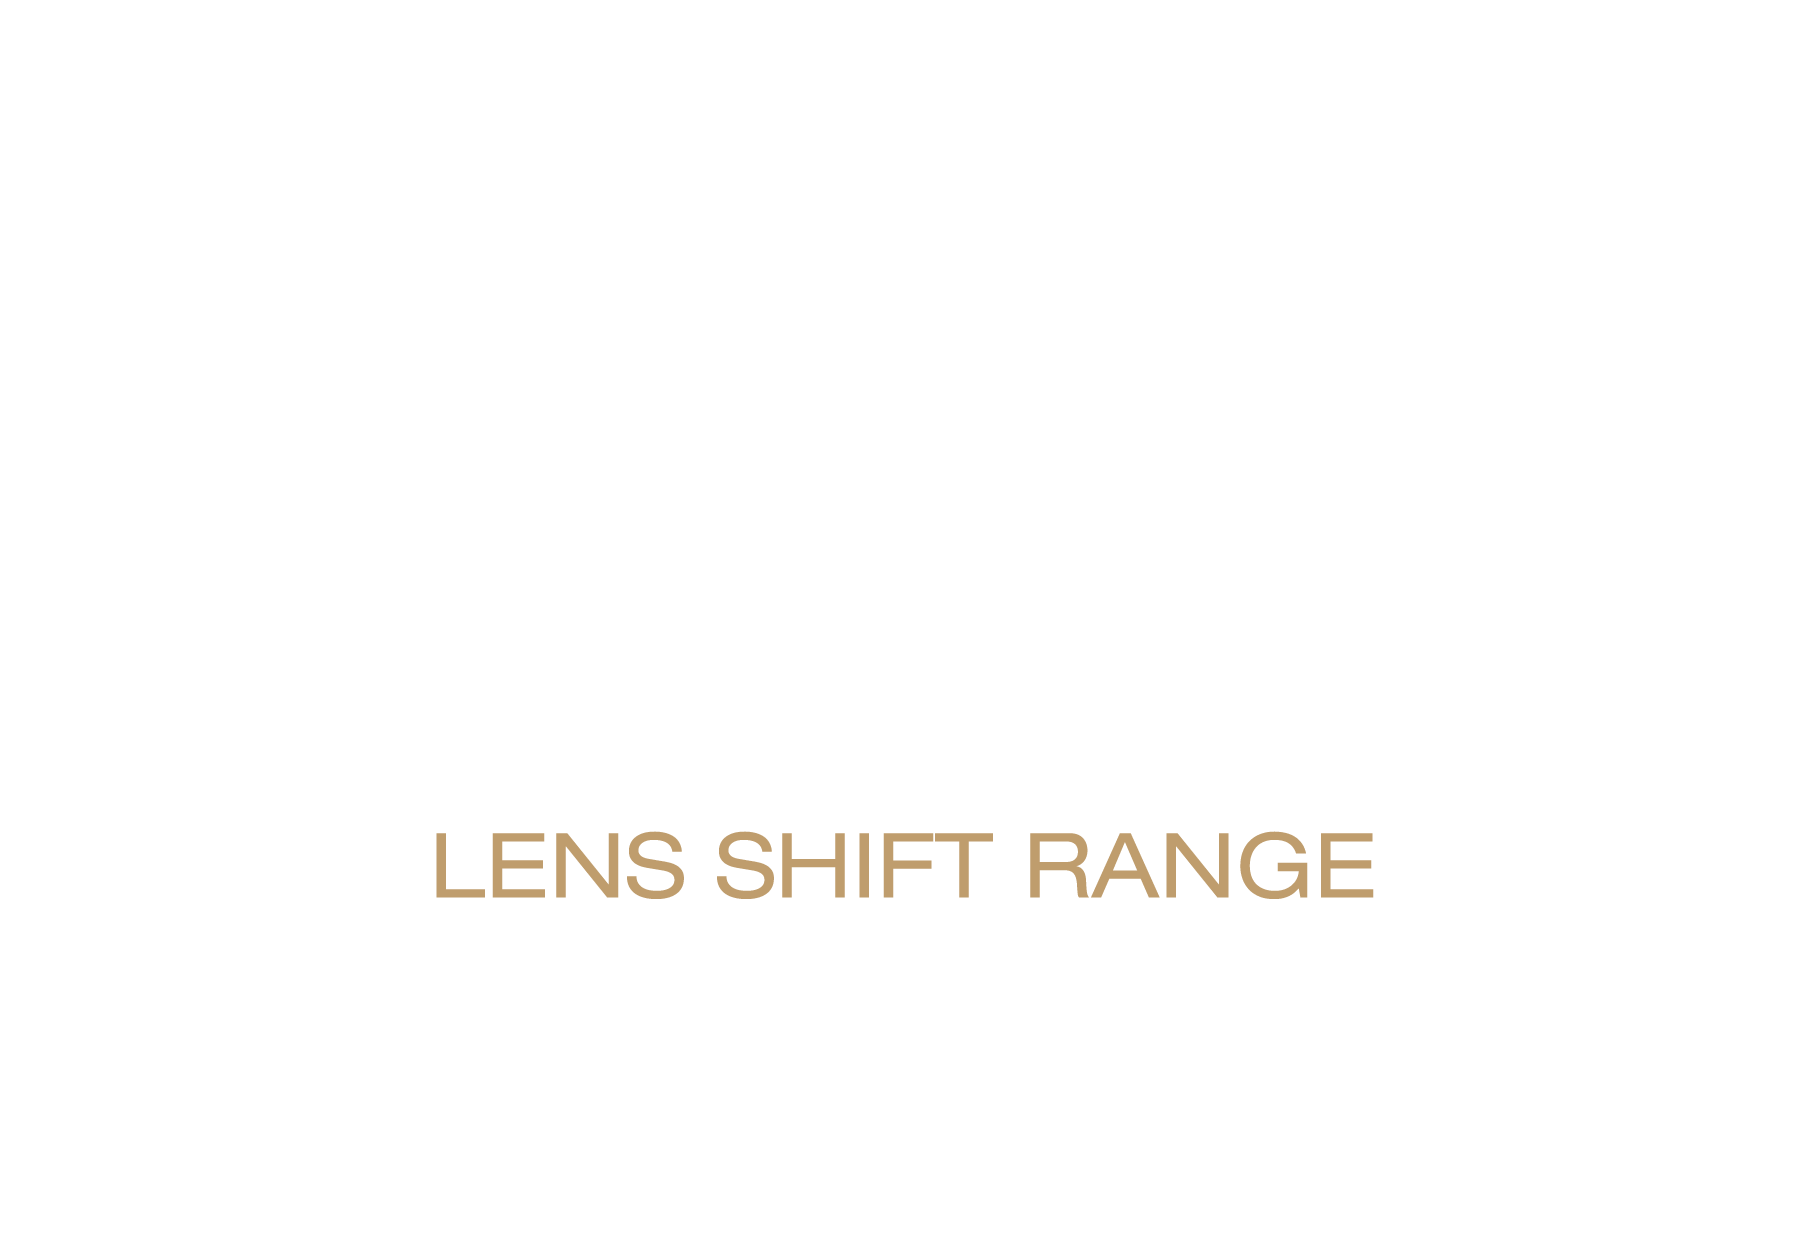 96% Horizontal Lens Shift Range | 47% Vertical Lens Shift Range